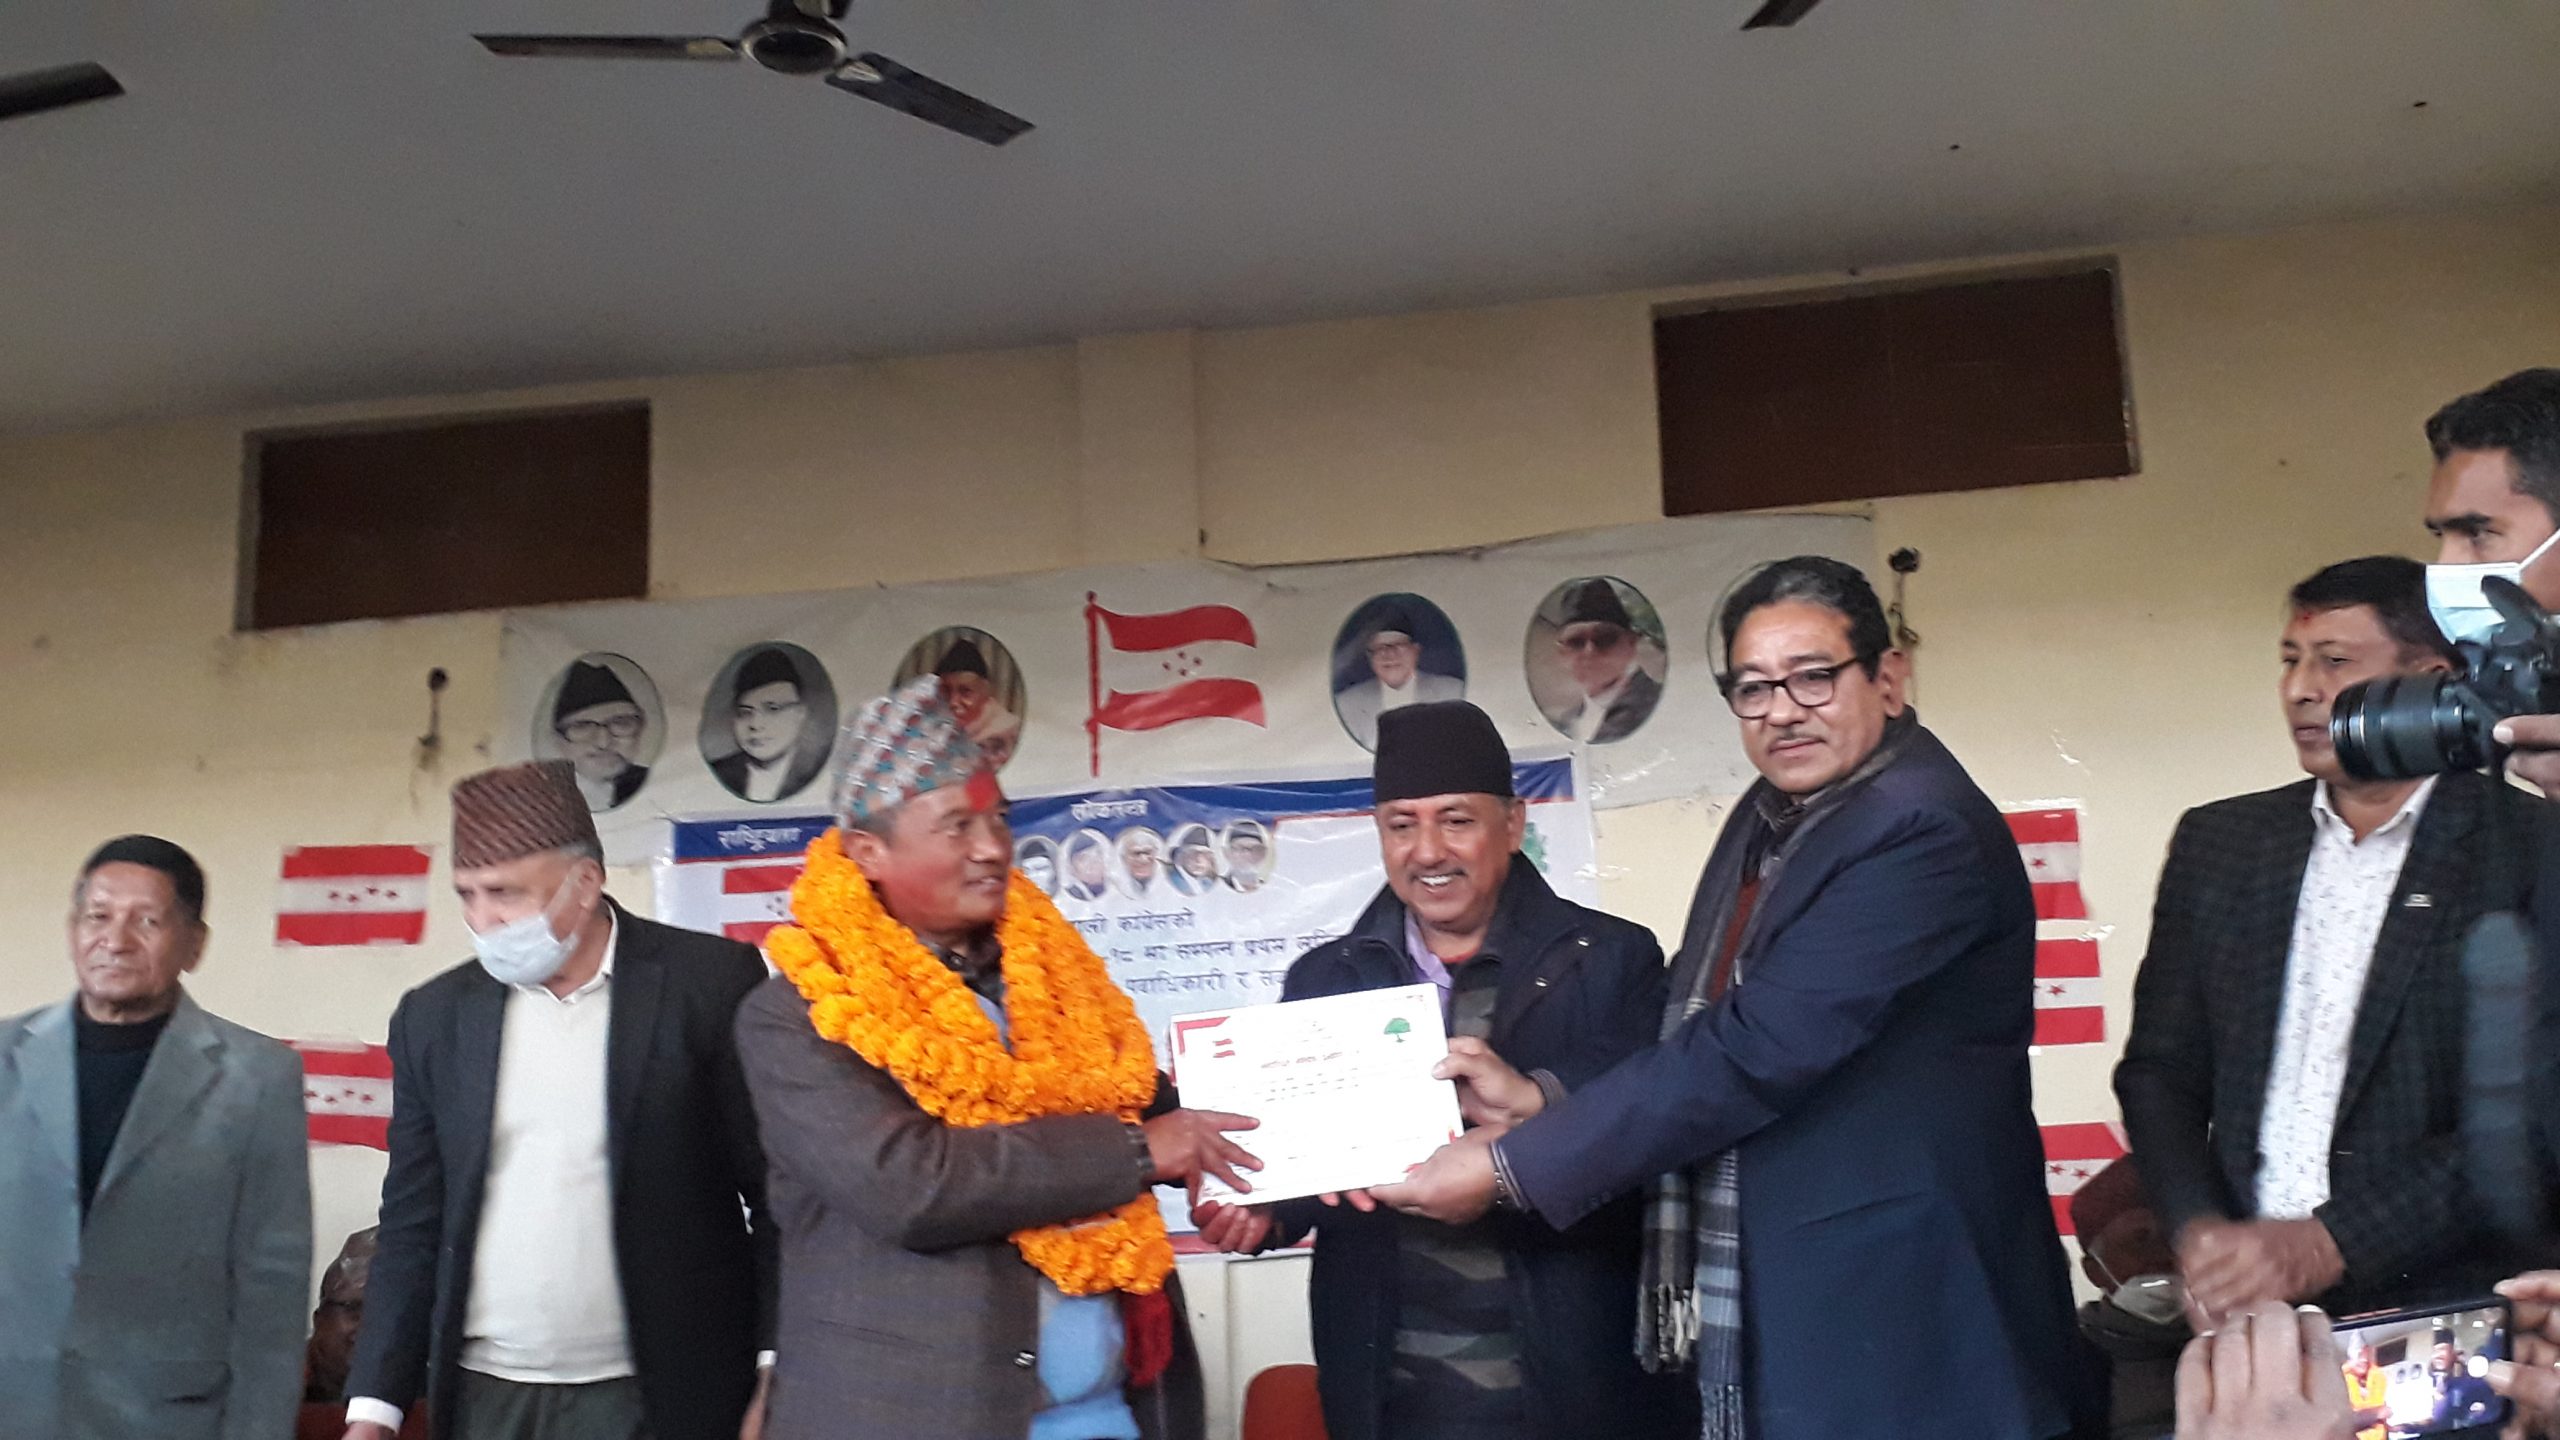 नेपाली काँग्रेस लुम्बिनीमा उपविजेता शाहलाई दाेस्राे वरियता